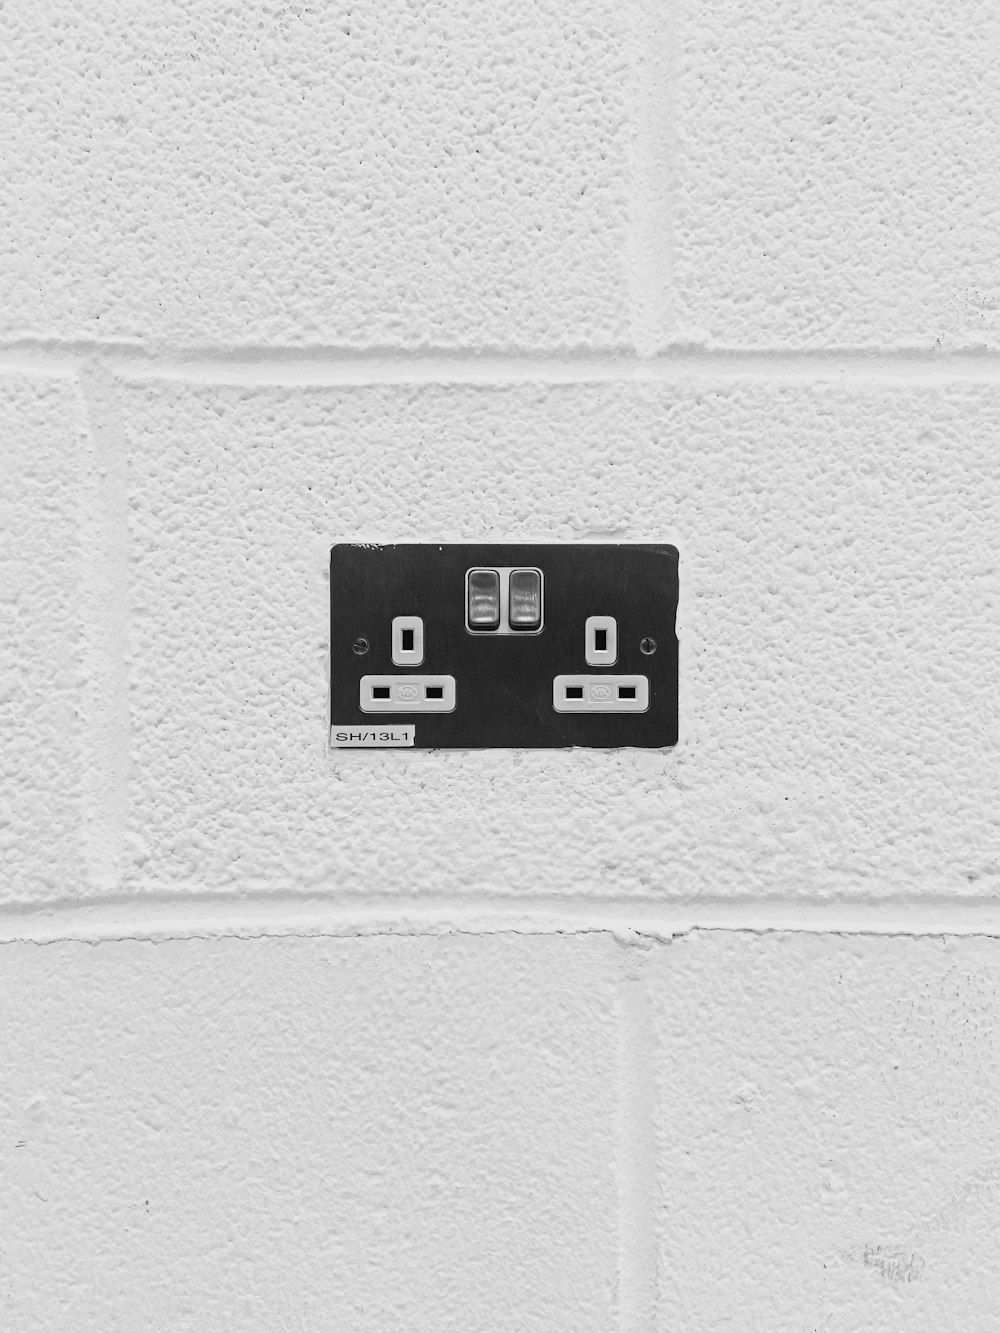 黒と白の壁掛けスイッチ